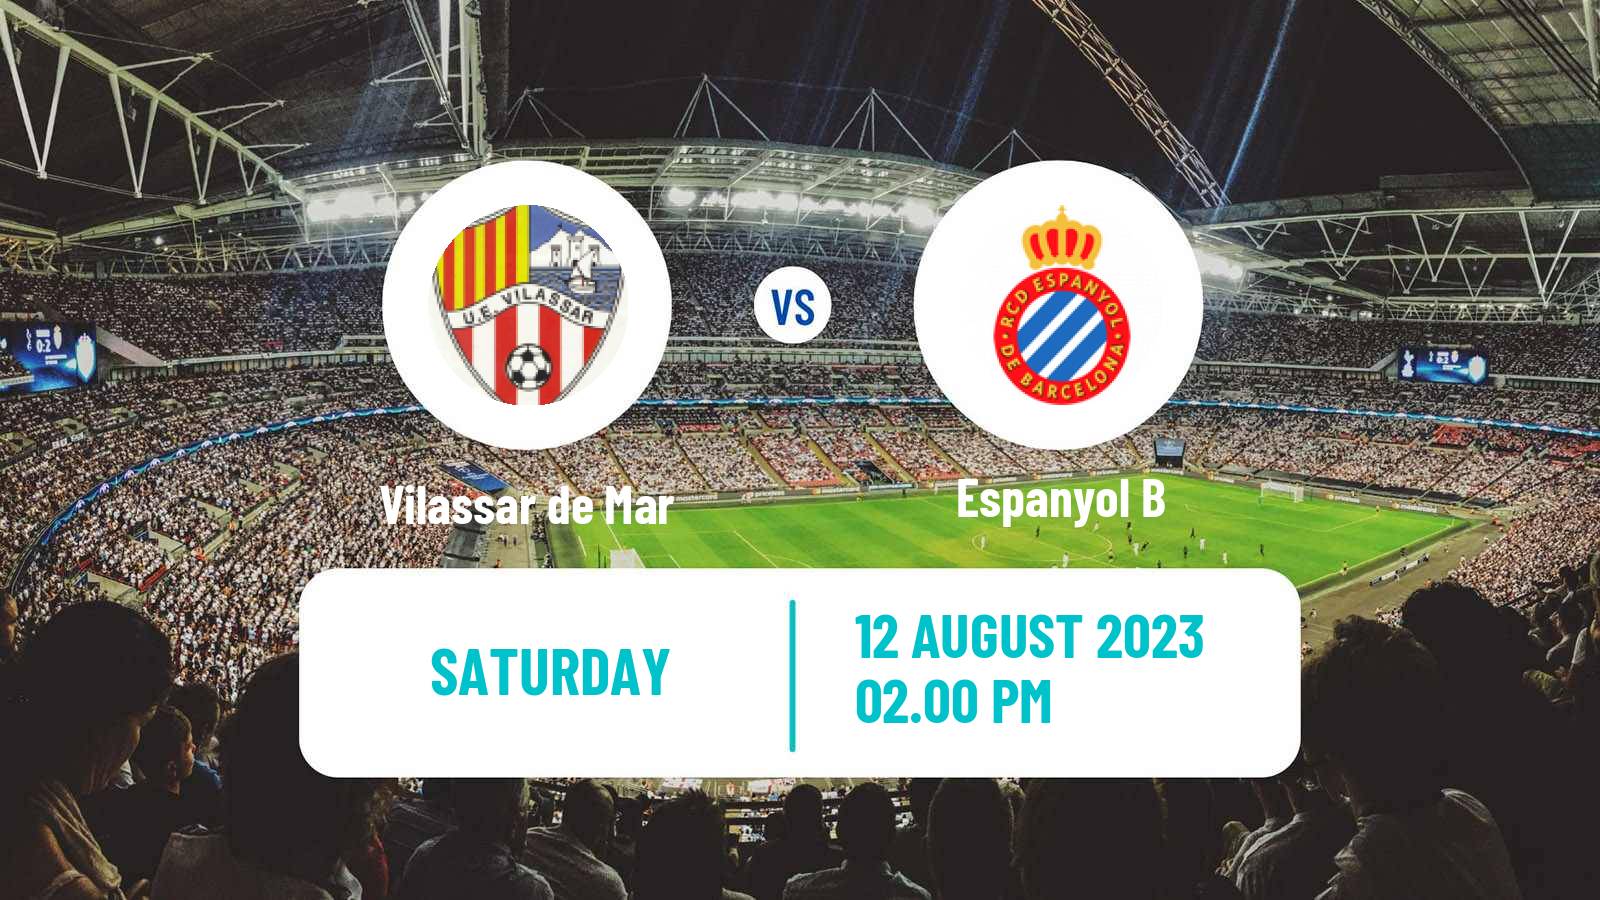 Soccer Club Friendly Vilassar de Mar - Espanyol B